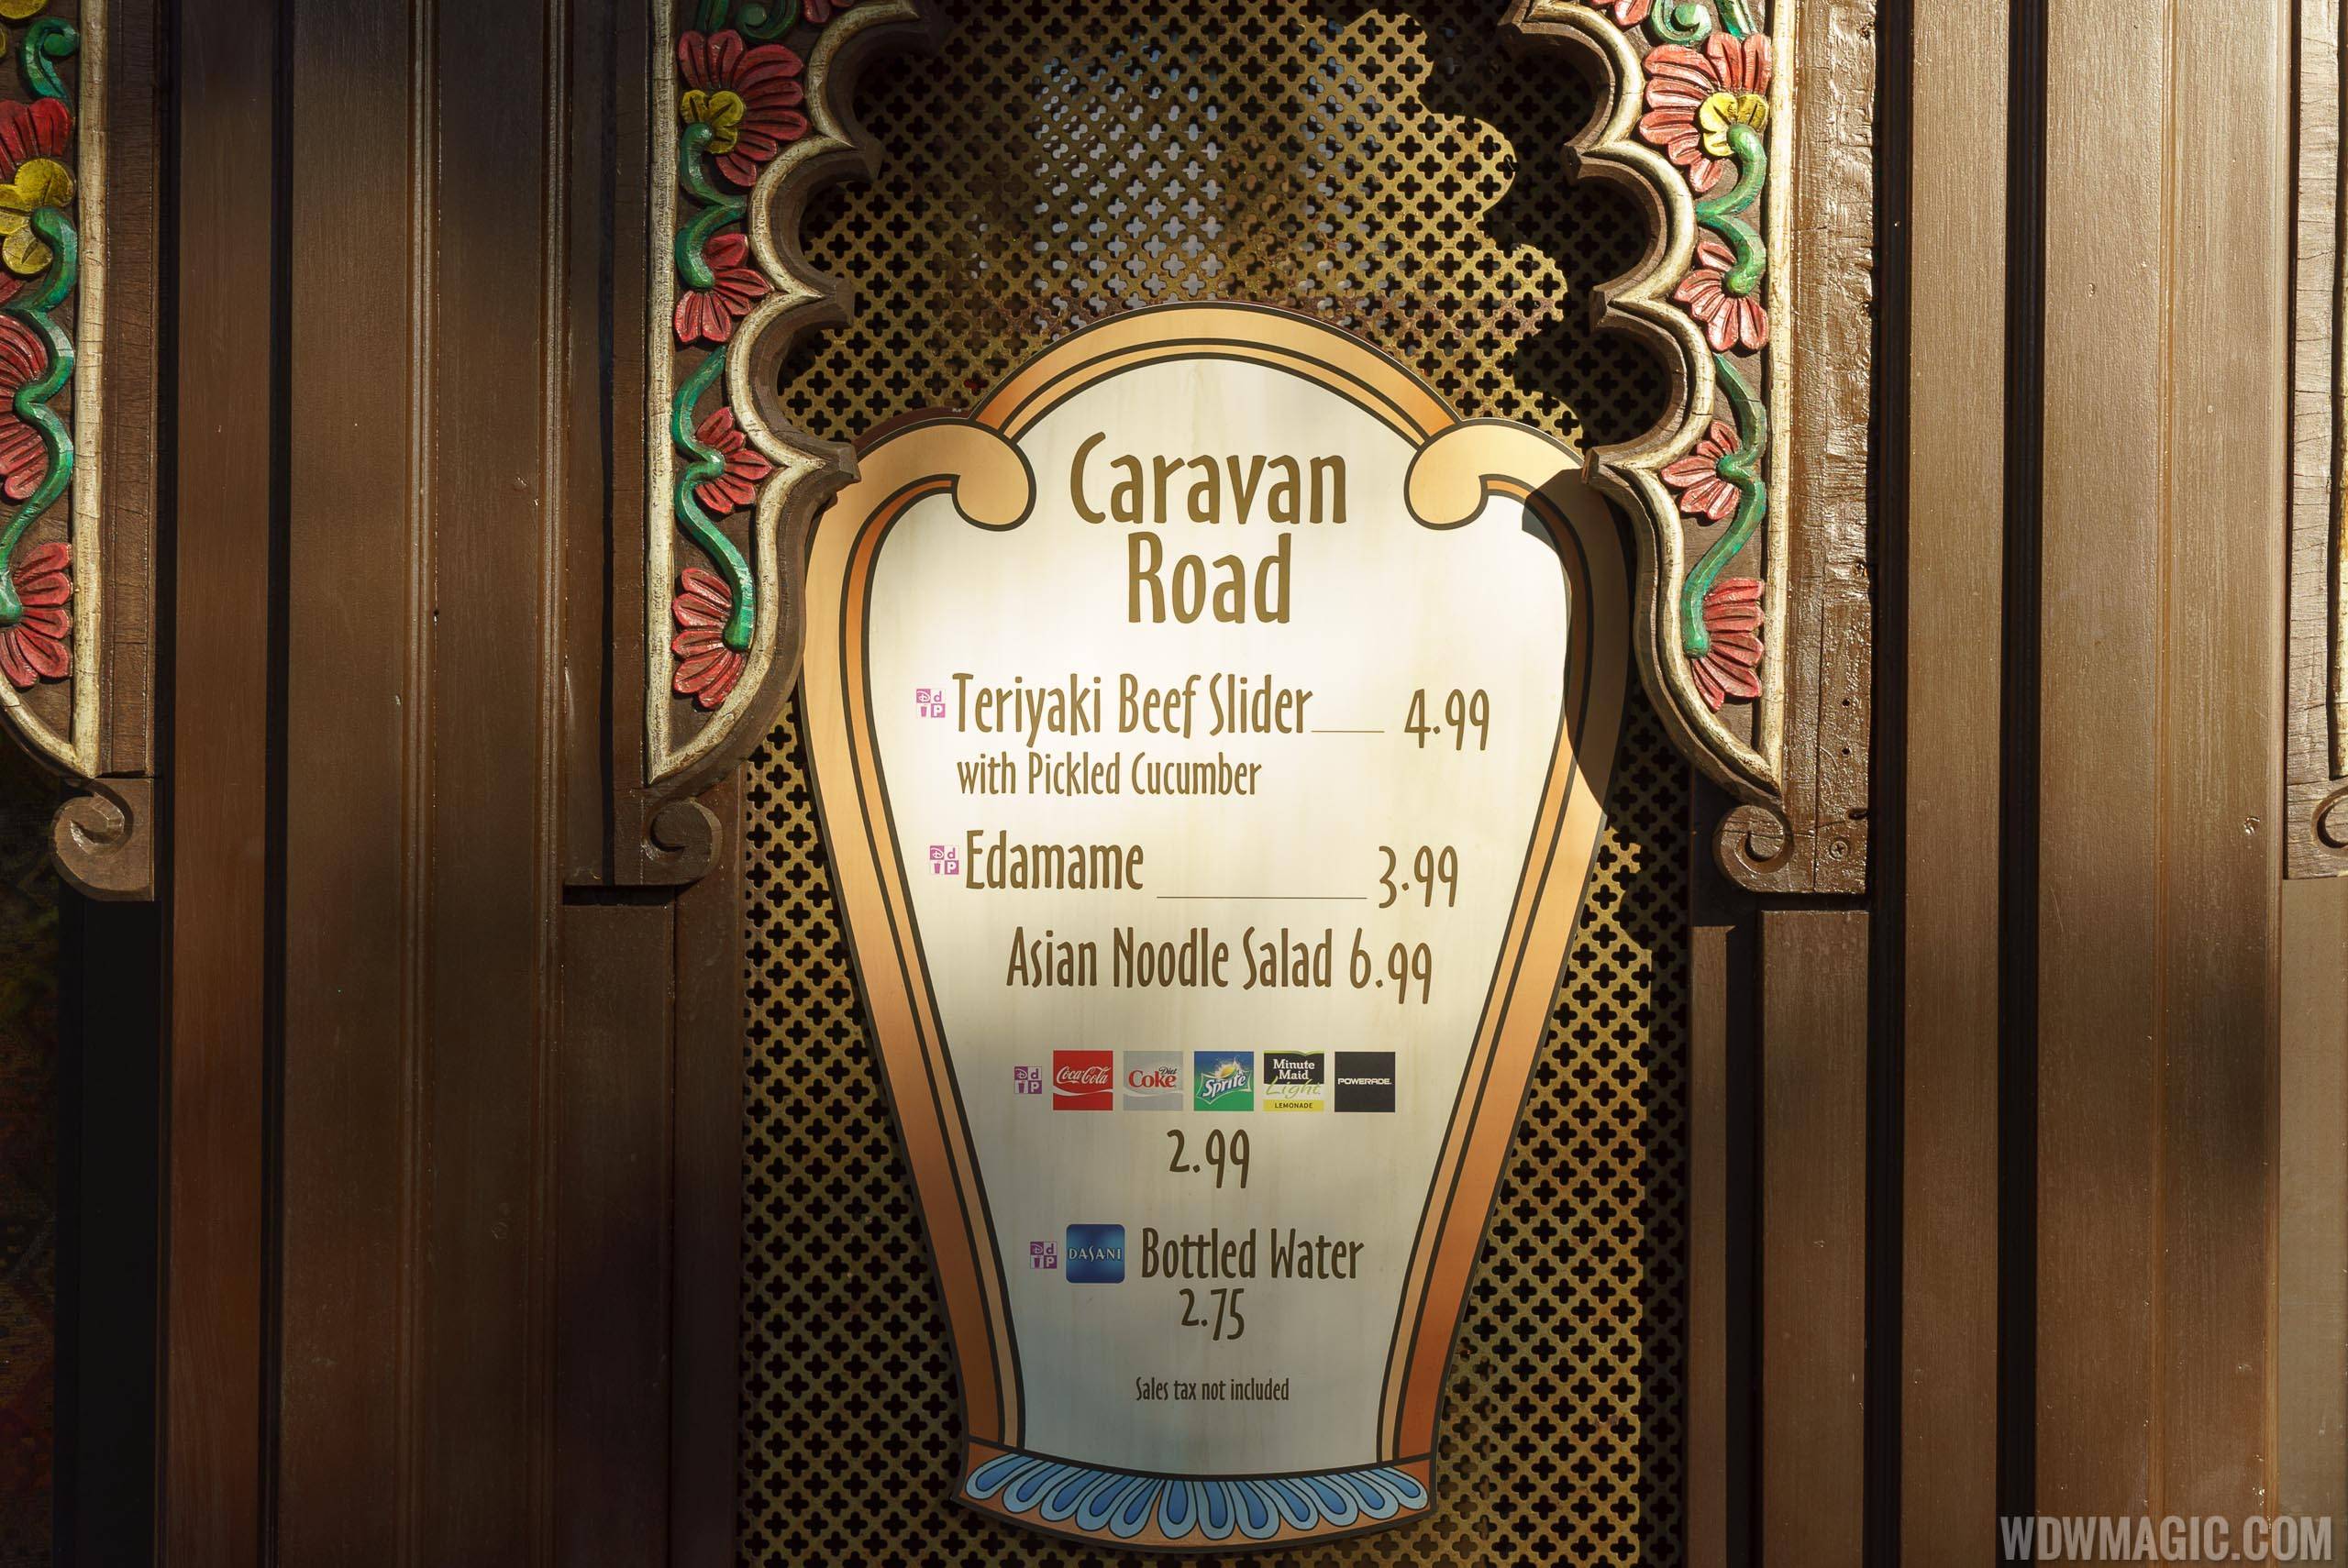 Caravan Road kiosk menu